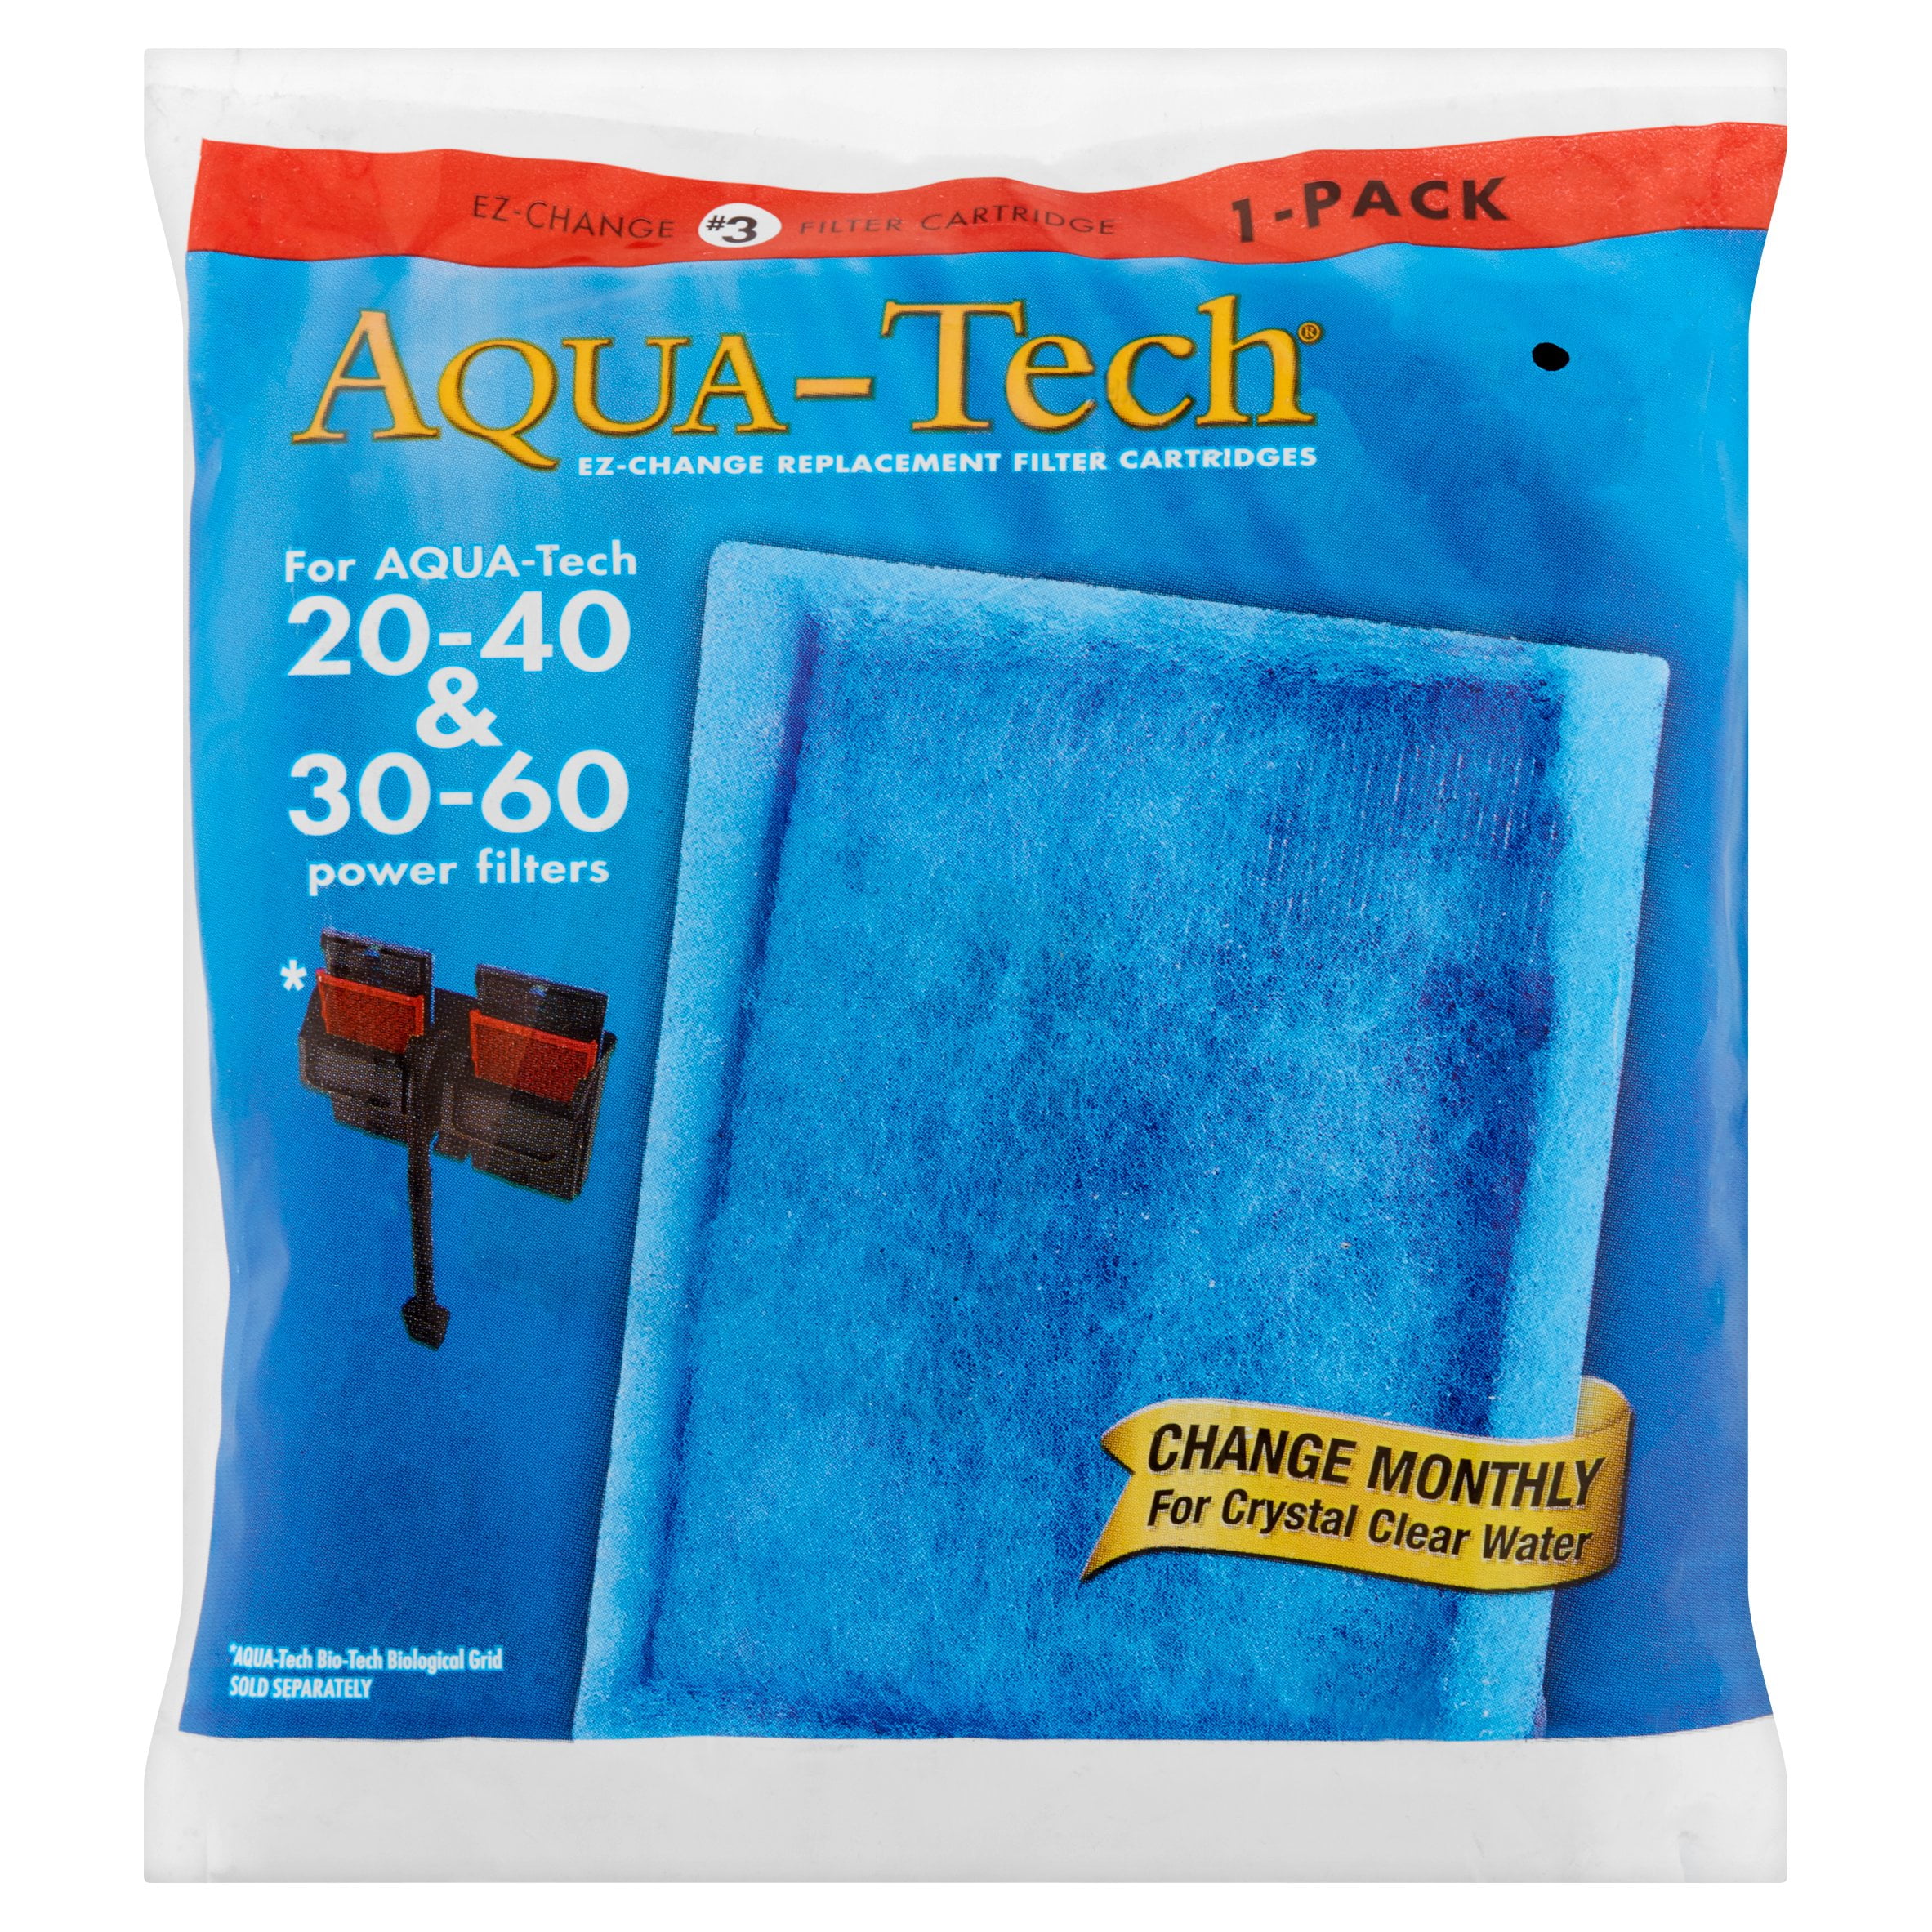 Aqua-Tech EZ Change Replacement #3 Filter Cartridges